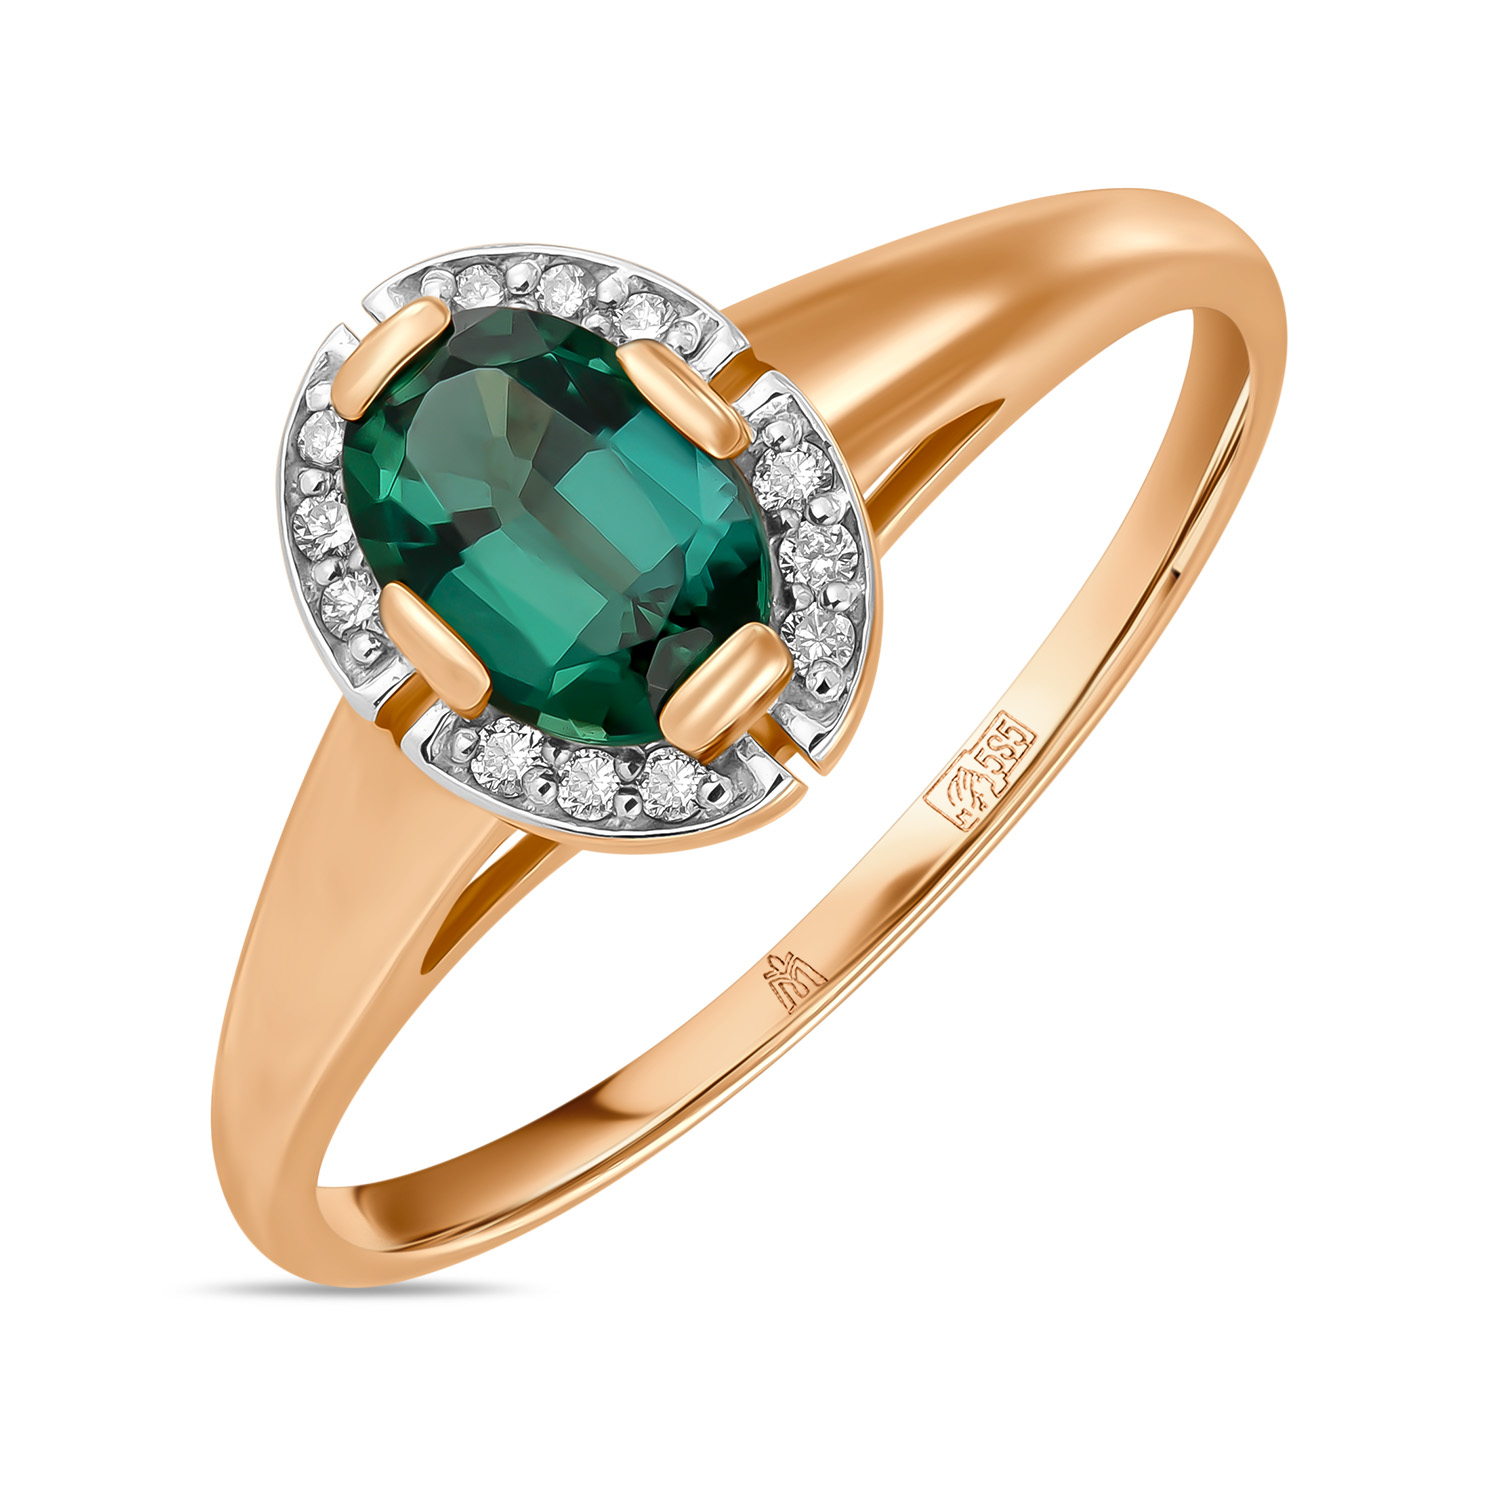 Кольца МЮЗ Кольцо с бриллиантами и гидротермальным изумрудом кольца мюз золотое кольцо с бриллиантами и гидротермальным изумрудом